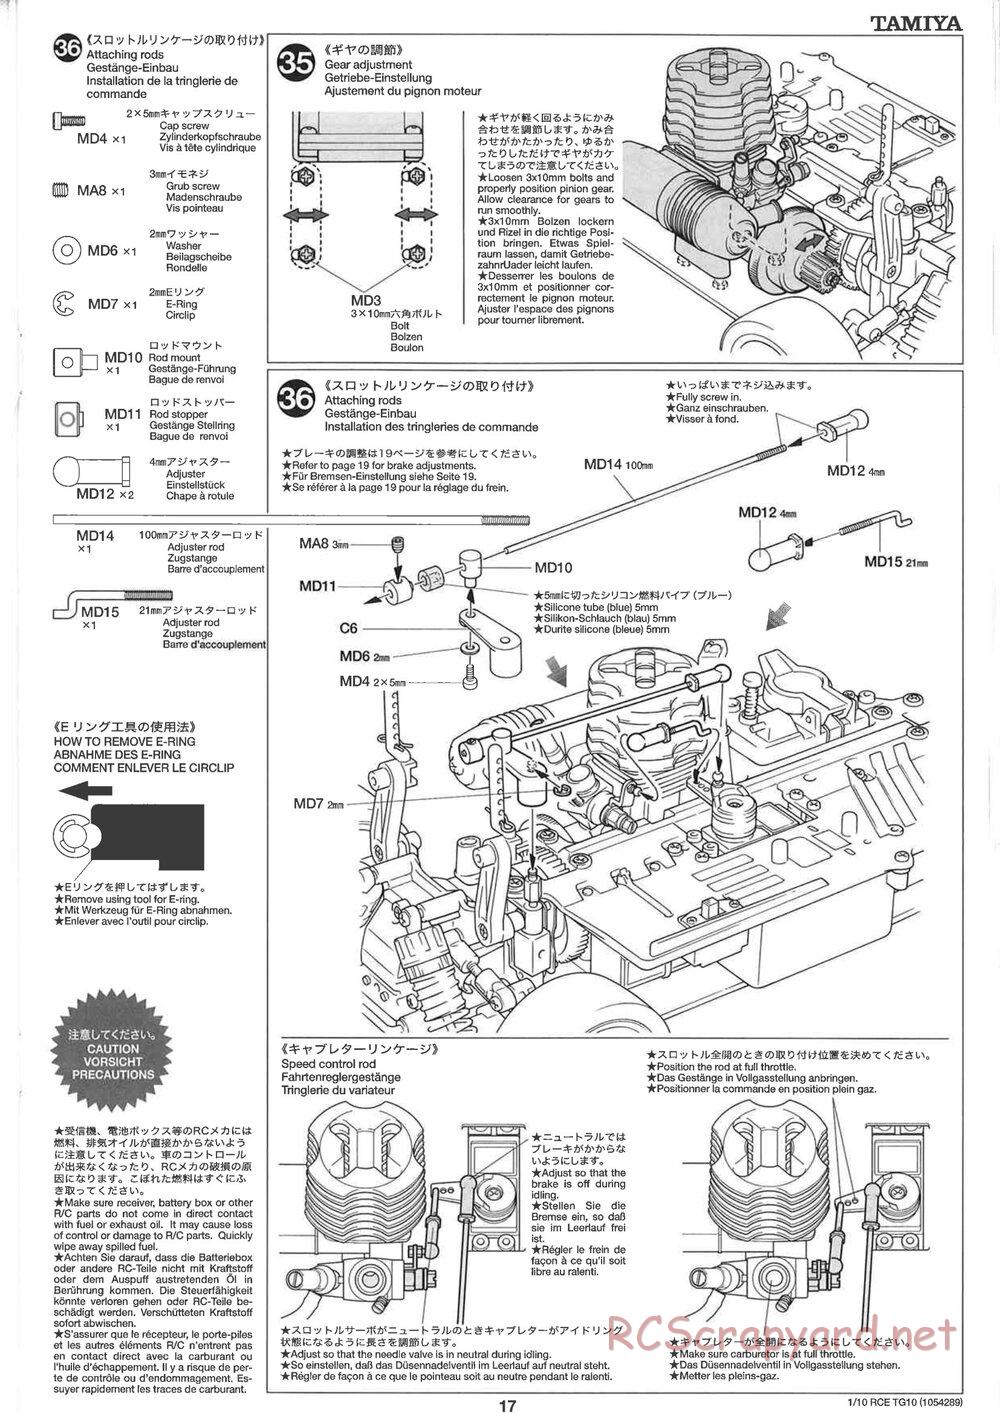 Tamiya - TG10 Mk.1 Chassis - Manual - Page 17